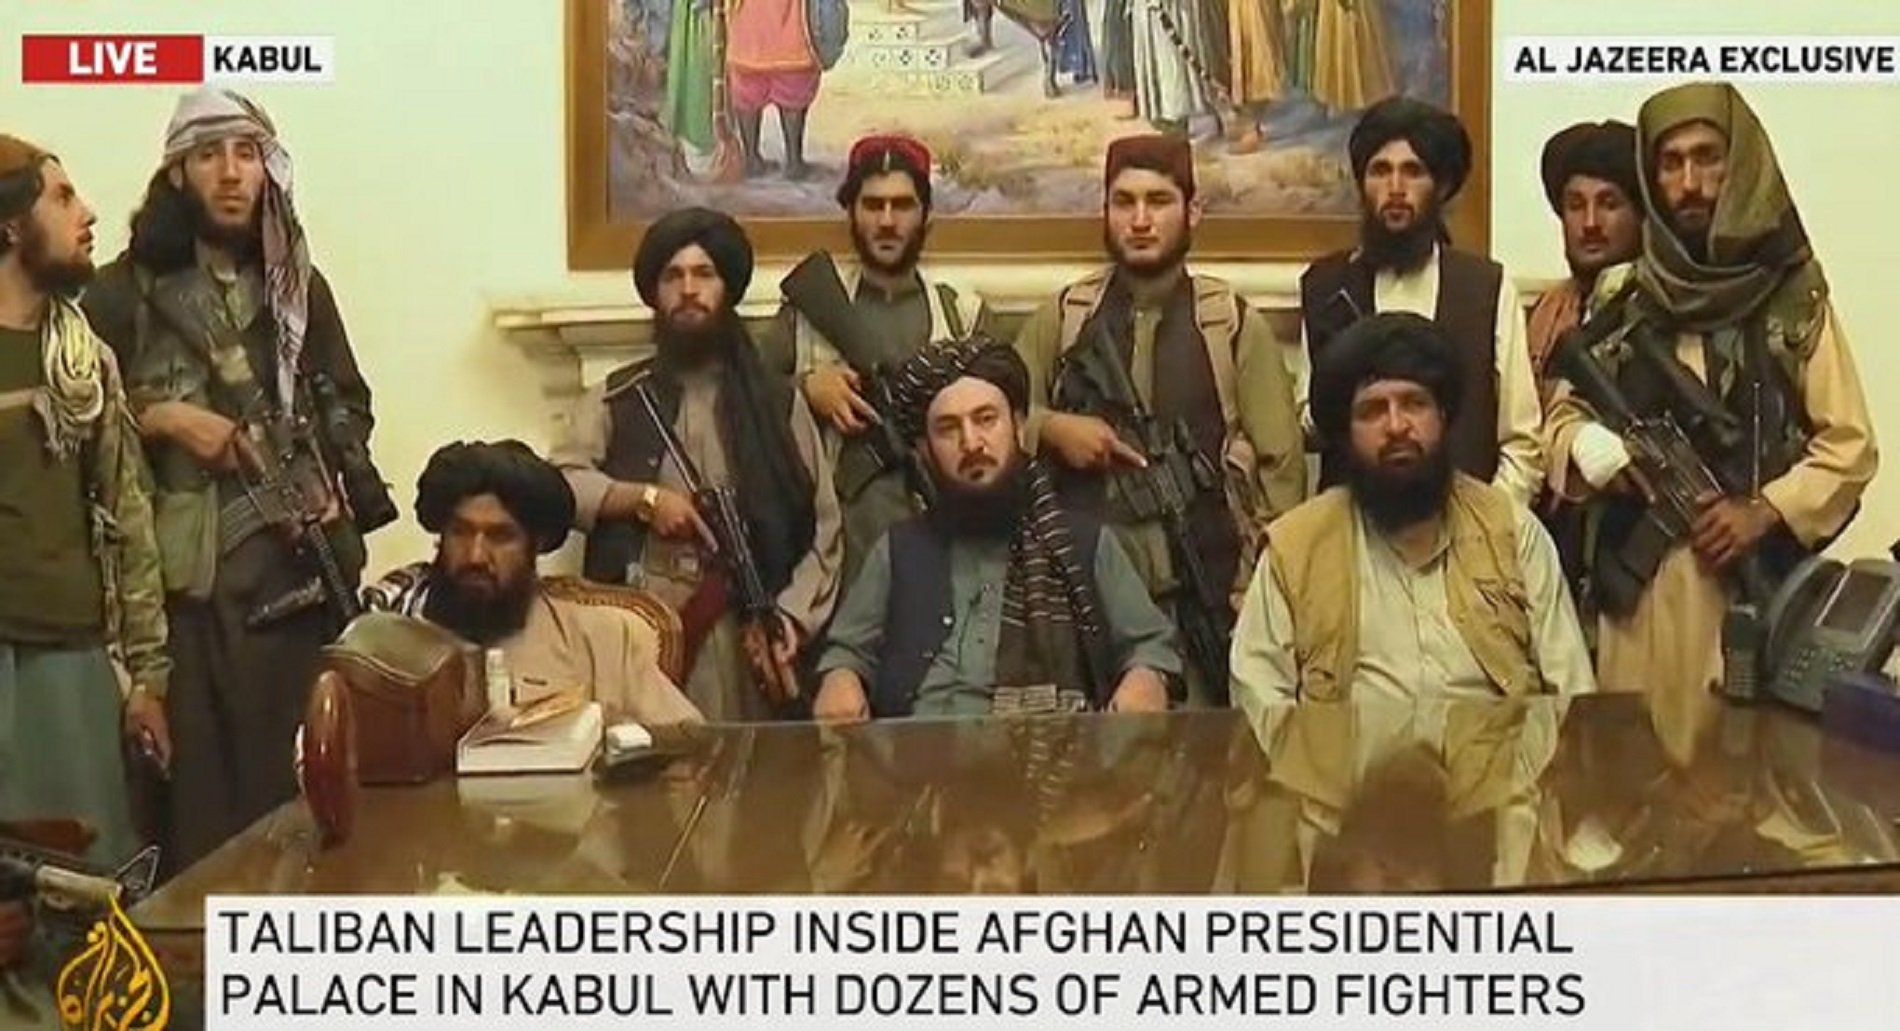 Quién es quién en la nueva cúpula talibana